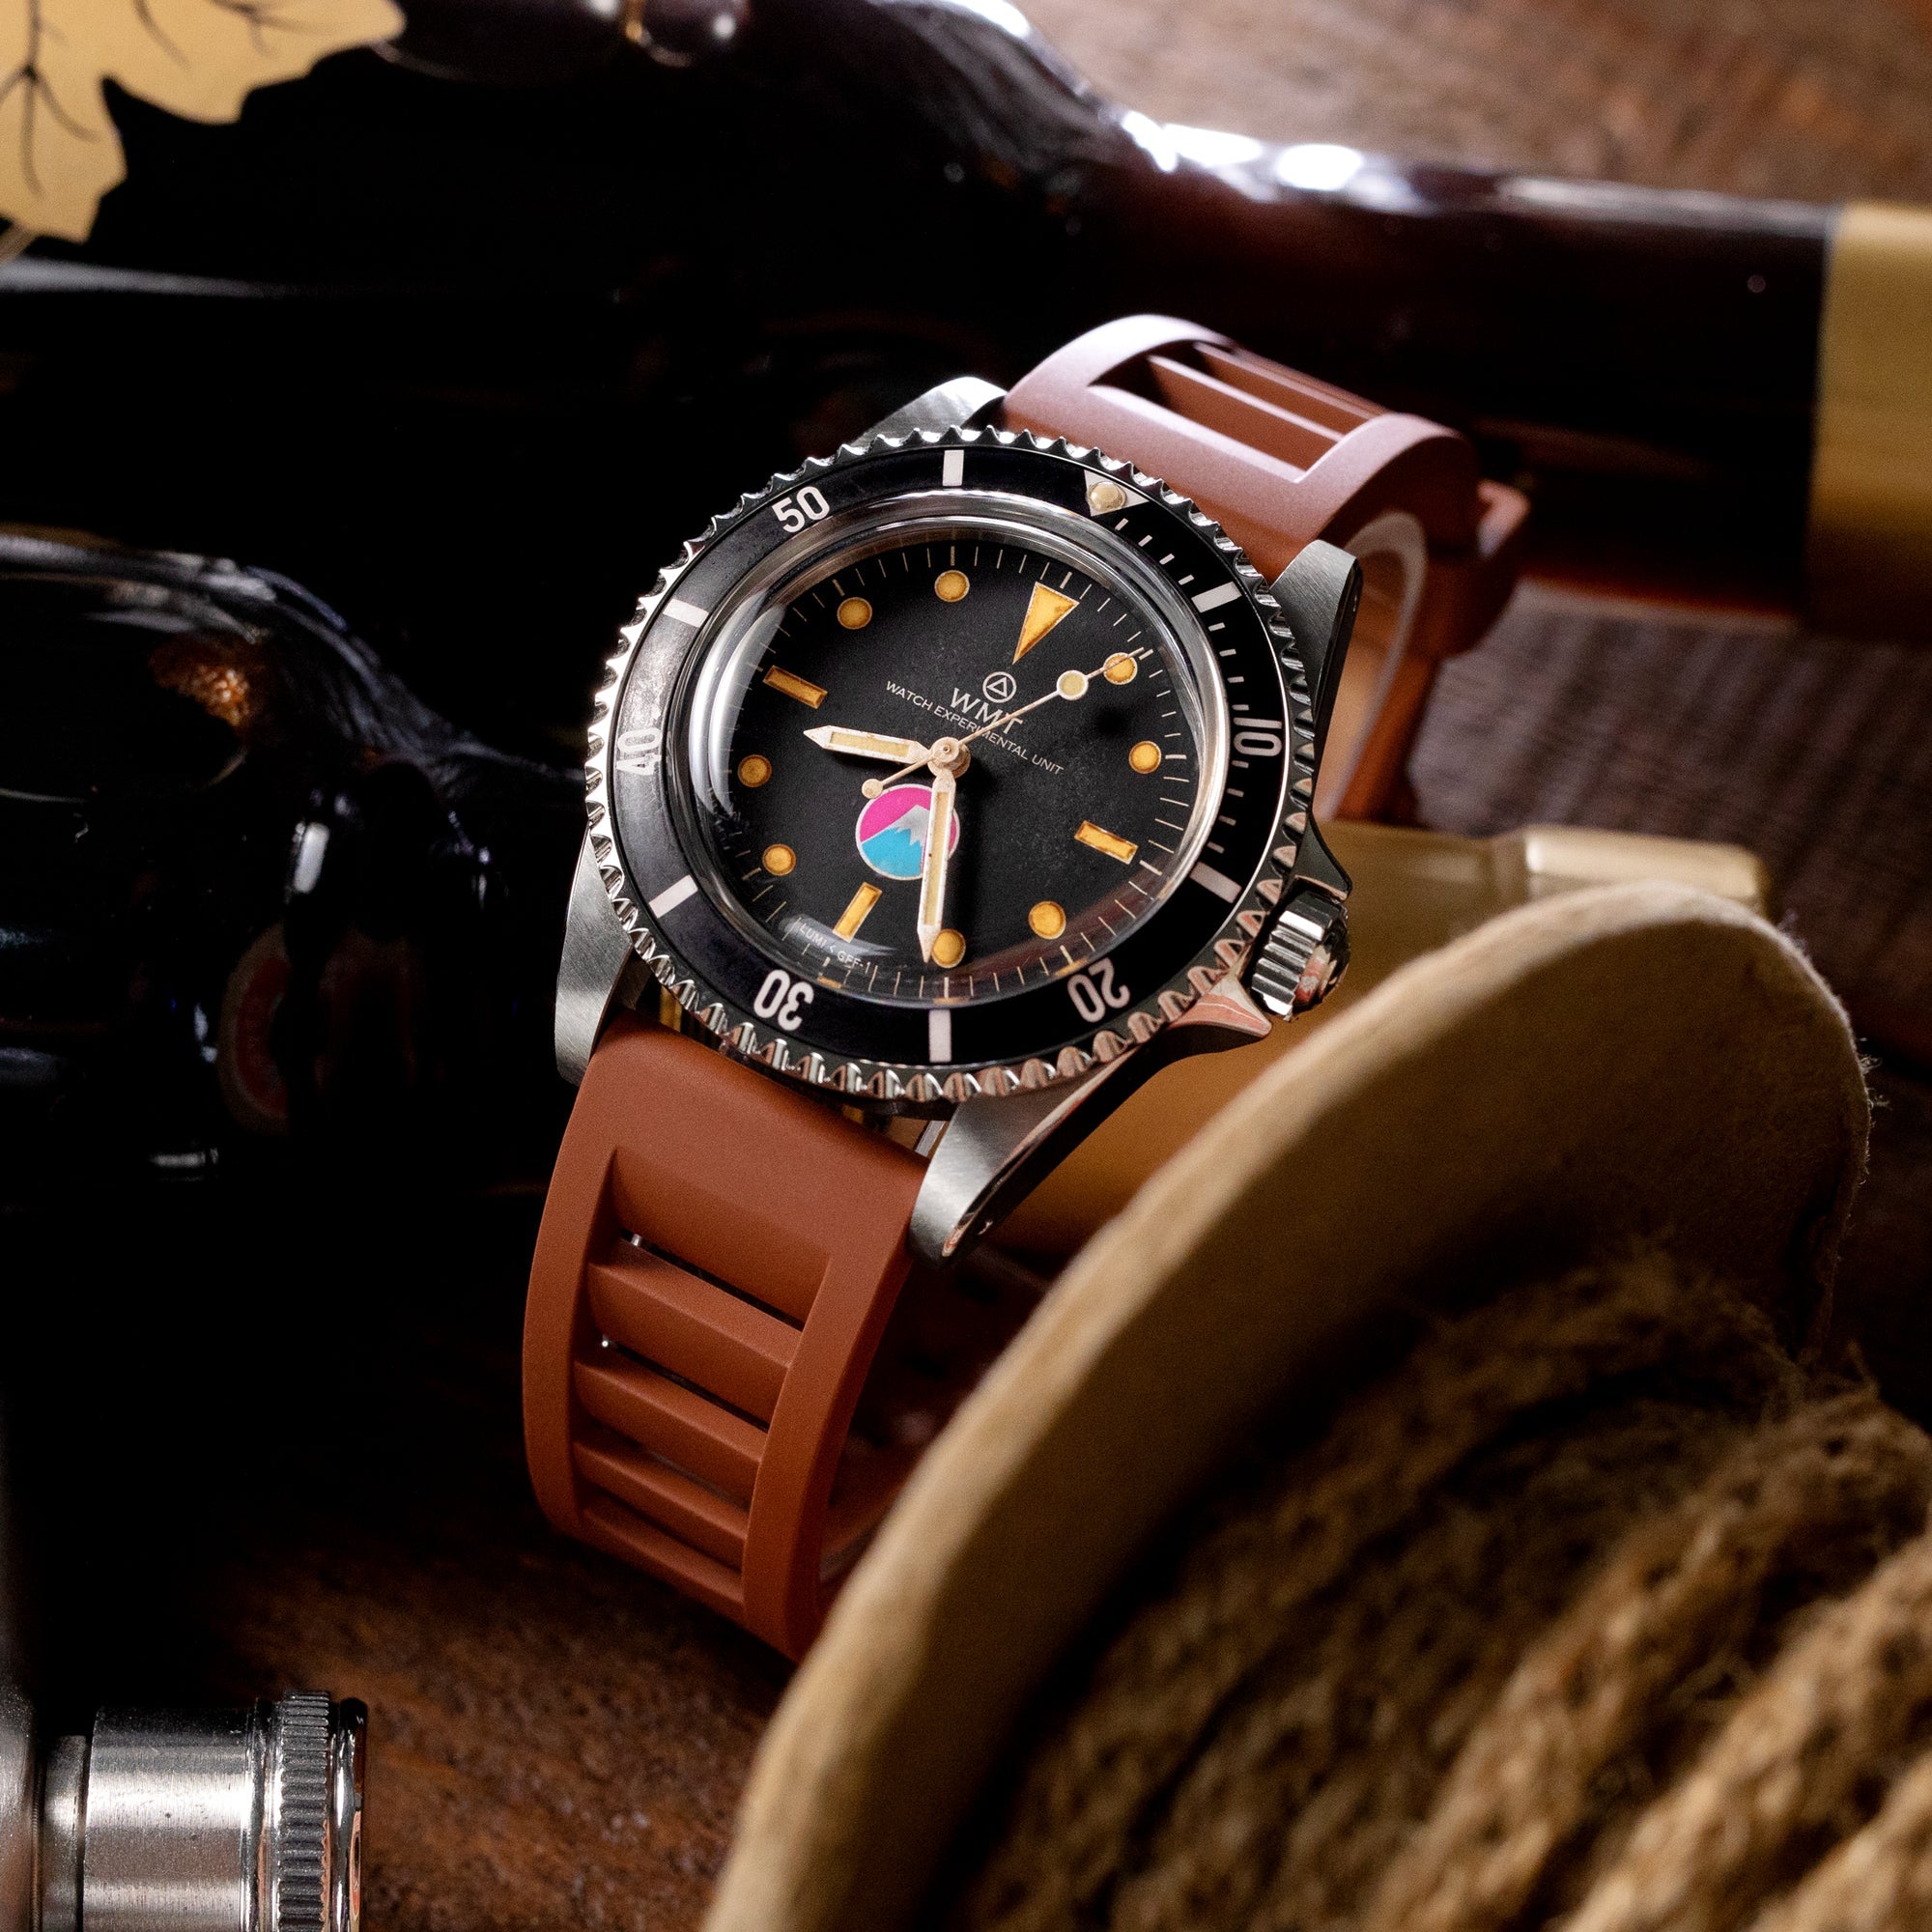 Royal Marine - Aged Fuji Version / ANZIANO Strapcode Watch Bands